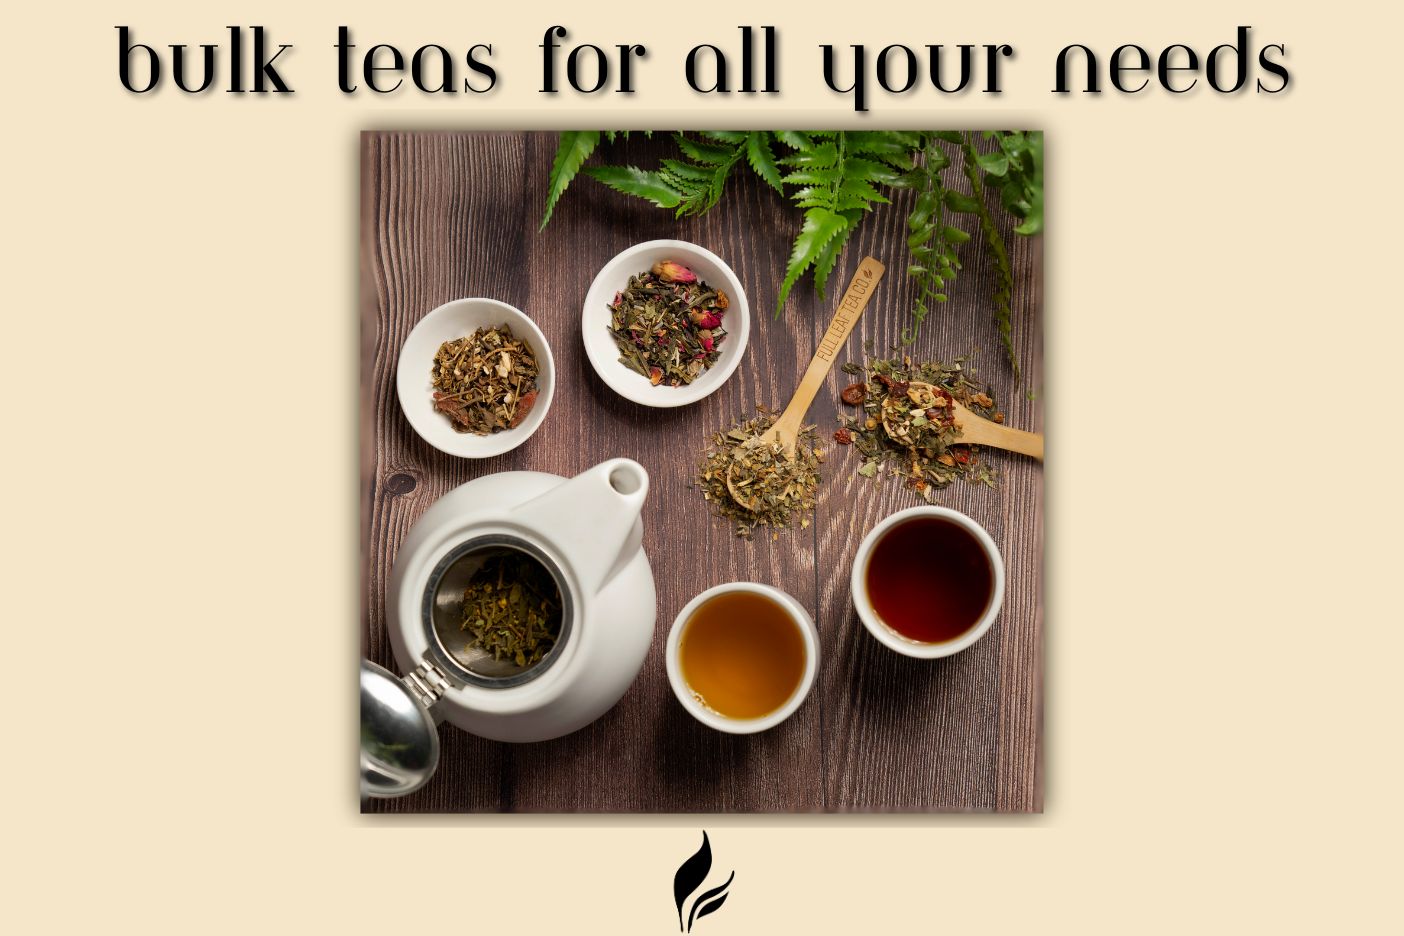 Bulk teas for all your needs